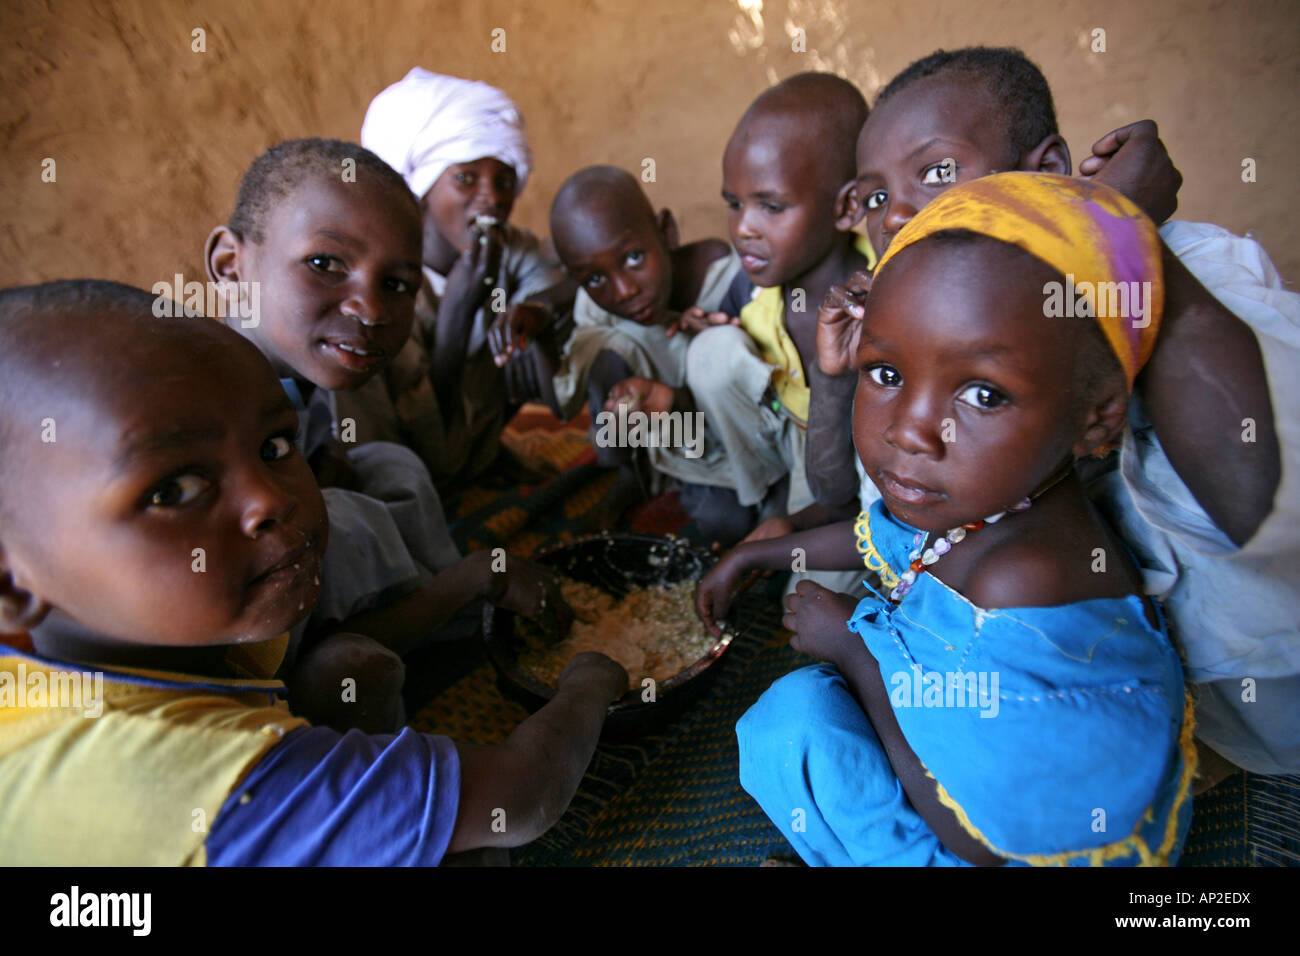 Se proporciona ayuda humanitaria a 30 000 refugiados sudaneses que han huido de Darfur desde que estalló la guerra en 2003 Foto de stock